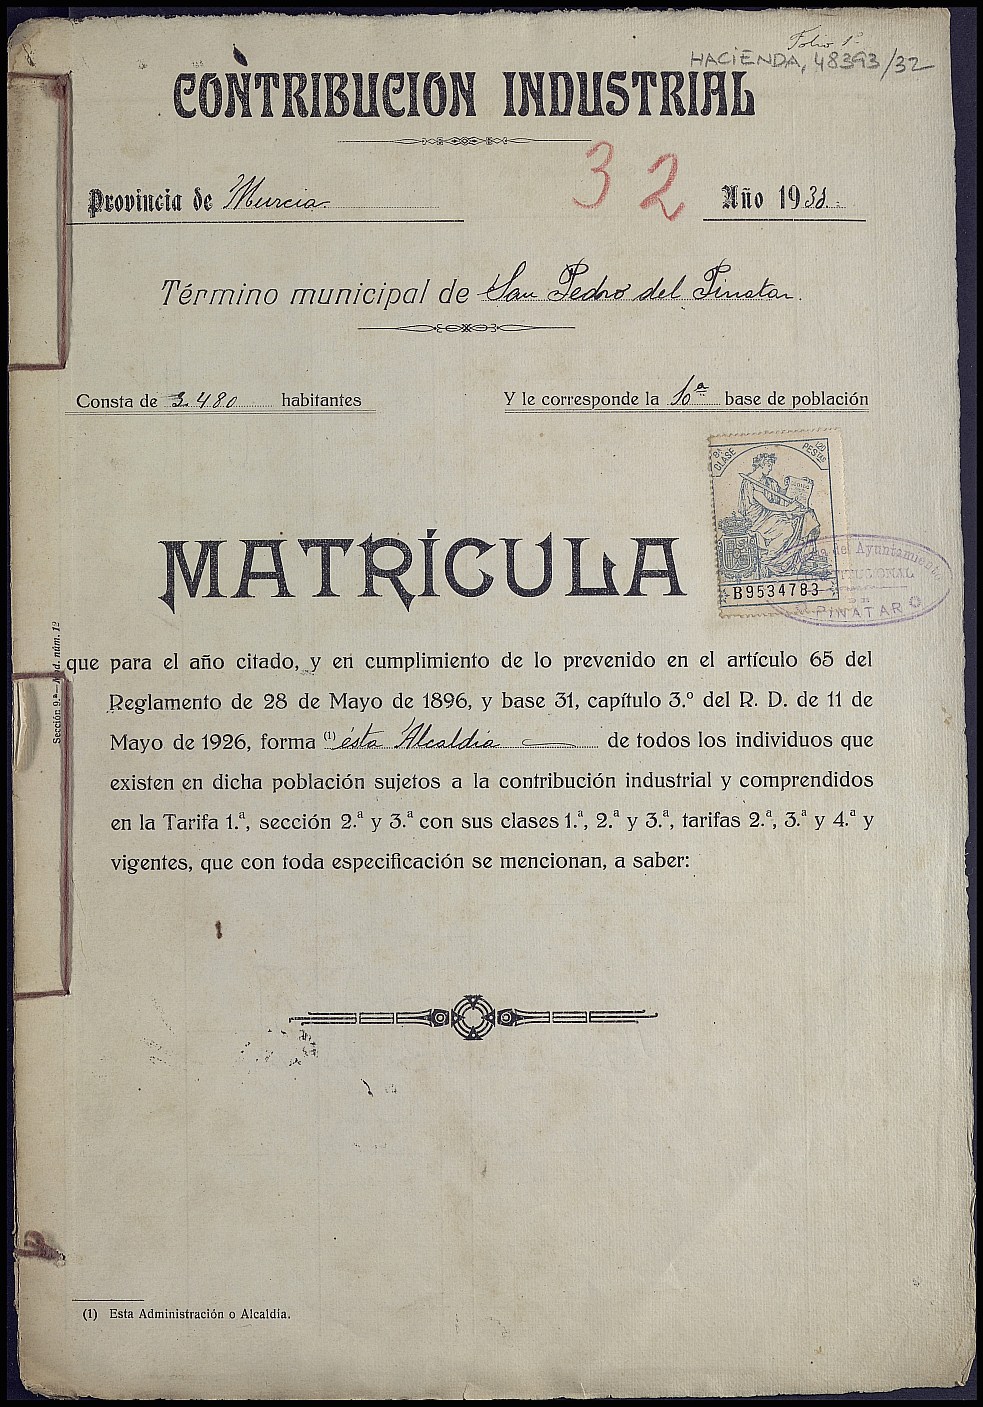 Matrícula de la contribución industrial de San Pedro del Pinatar. Año 1931.